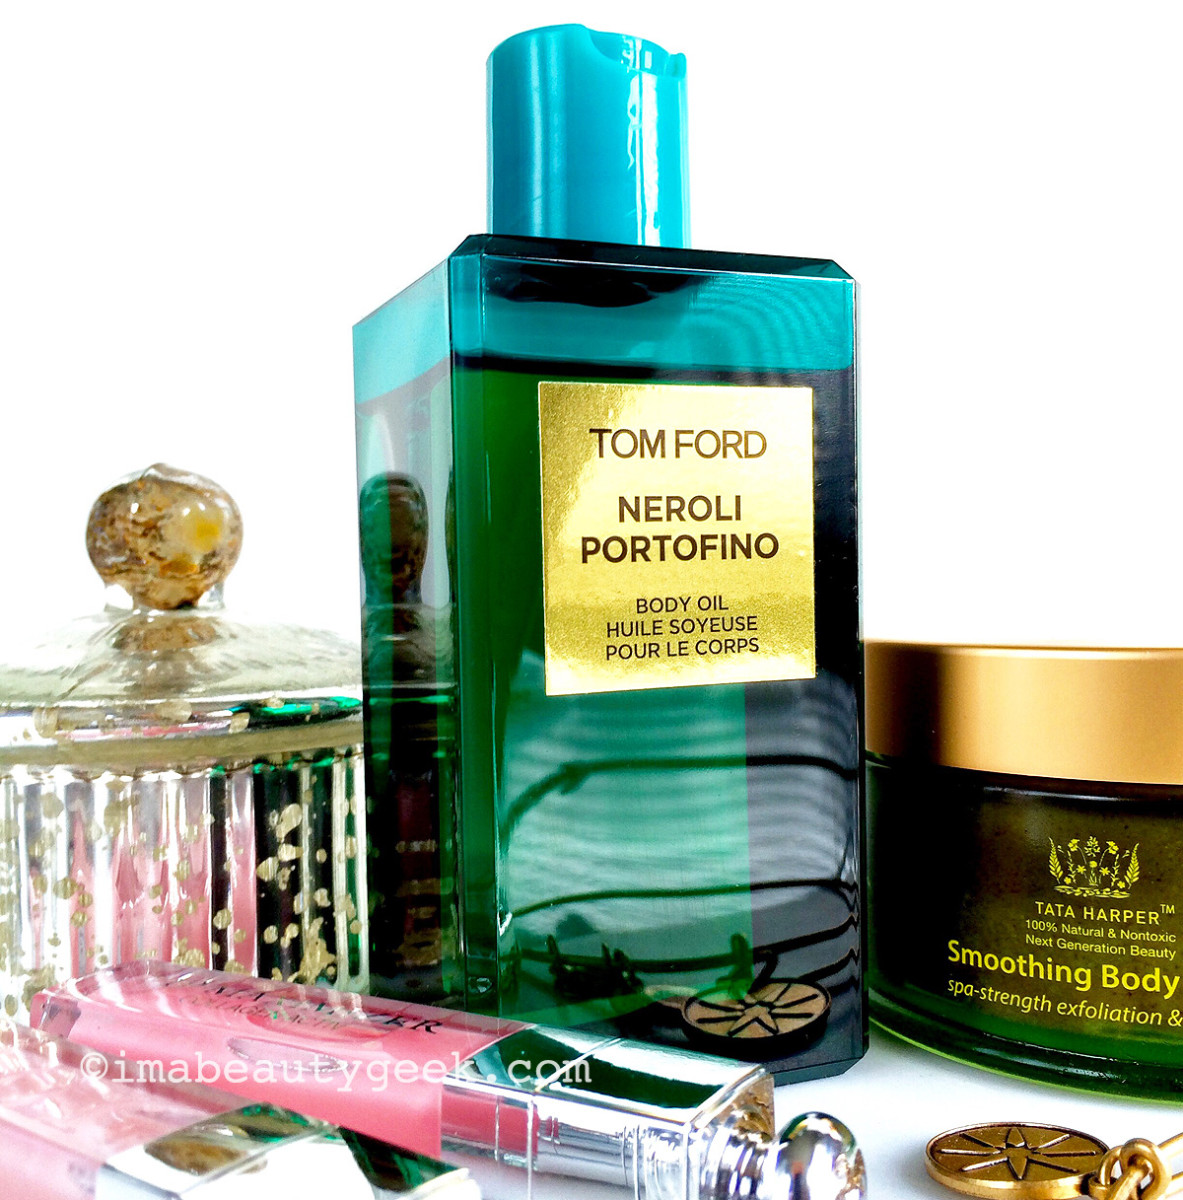 Tom Ford Body Oil in Neroli Portofino, Tata Harper Smoothing Body Scrub, Dior Addict Lip Maximizer